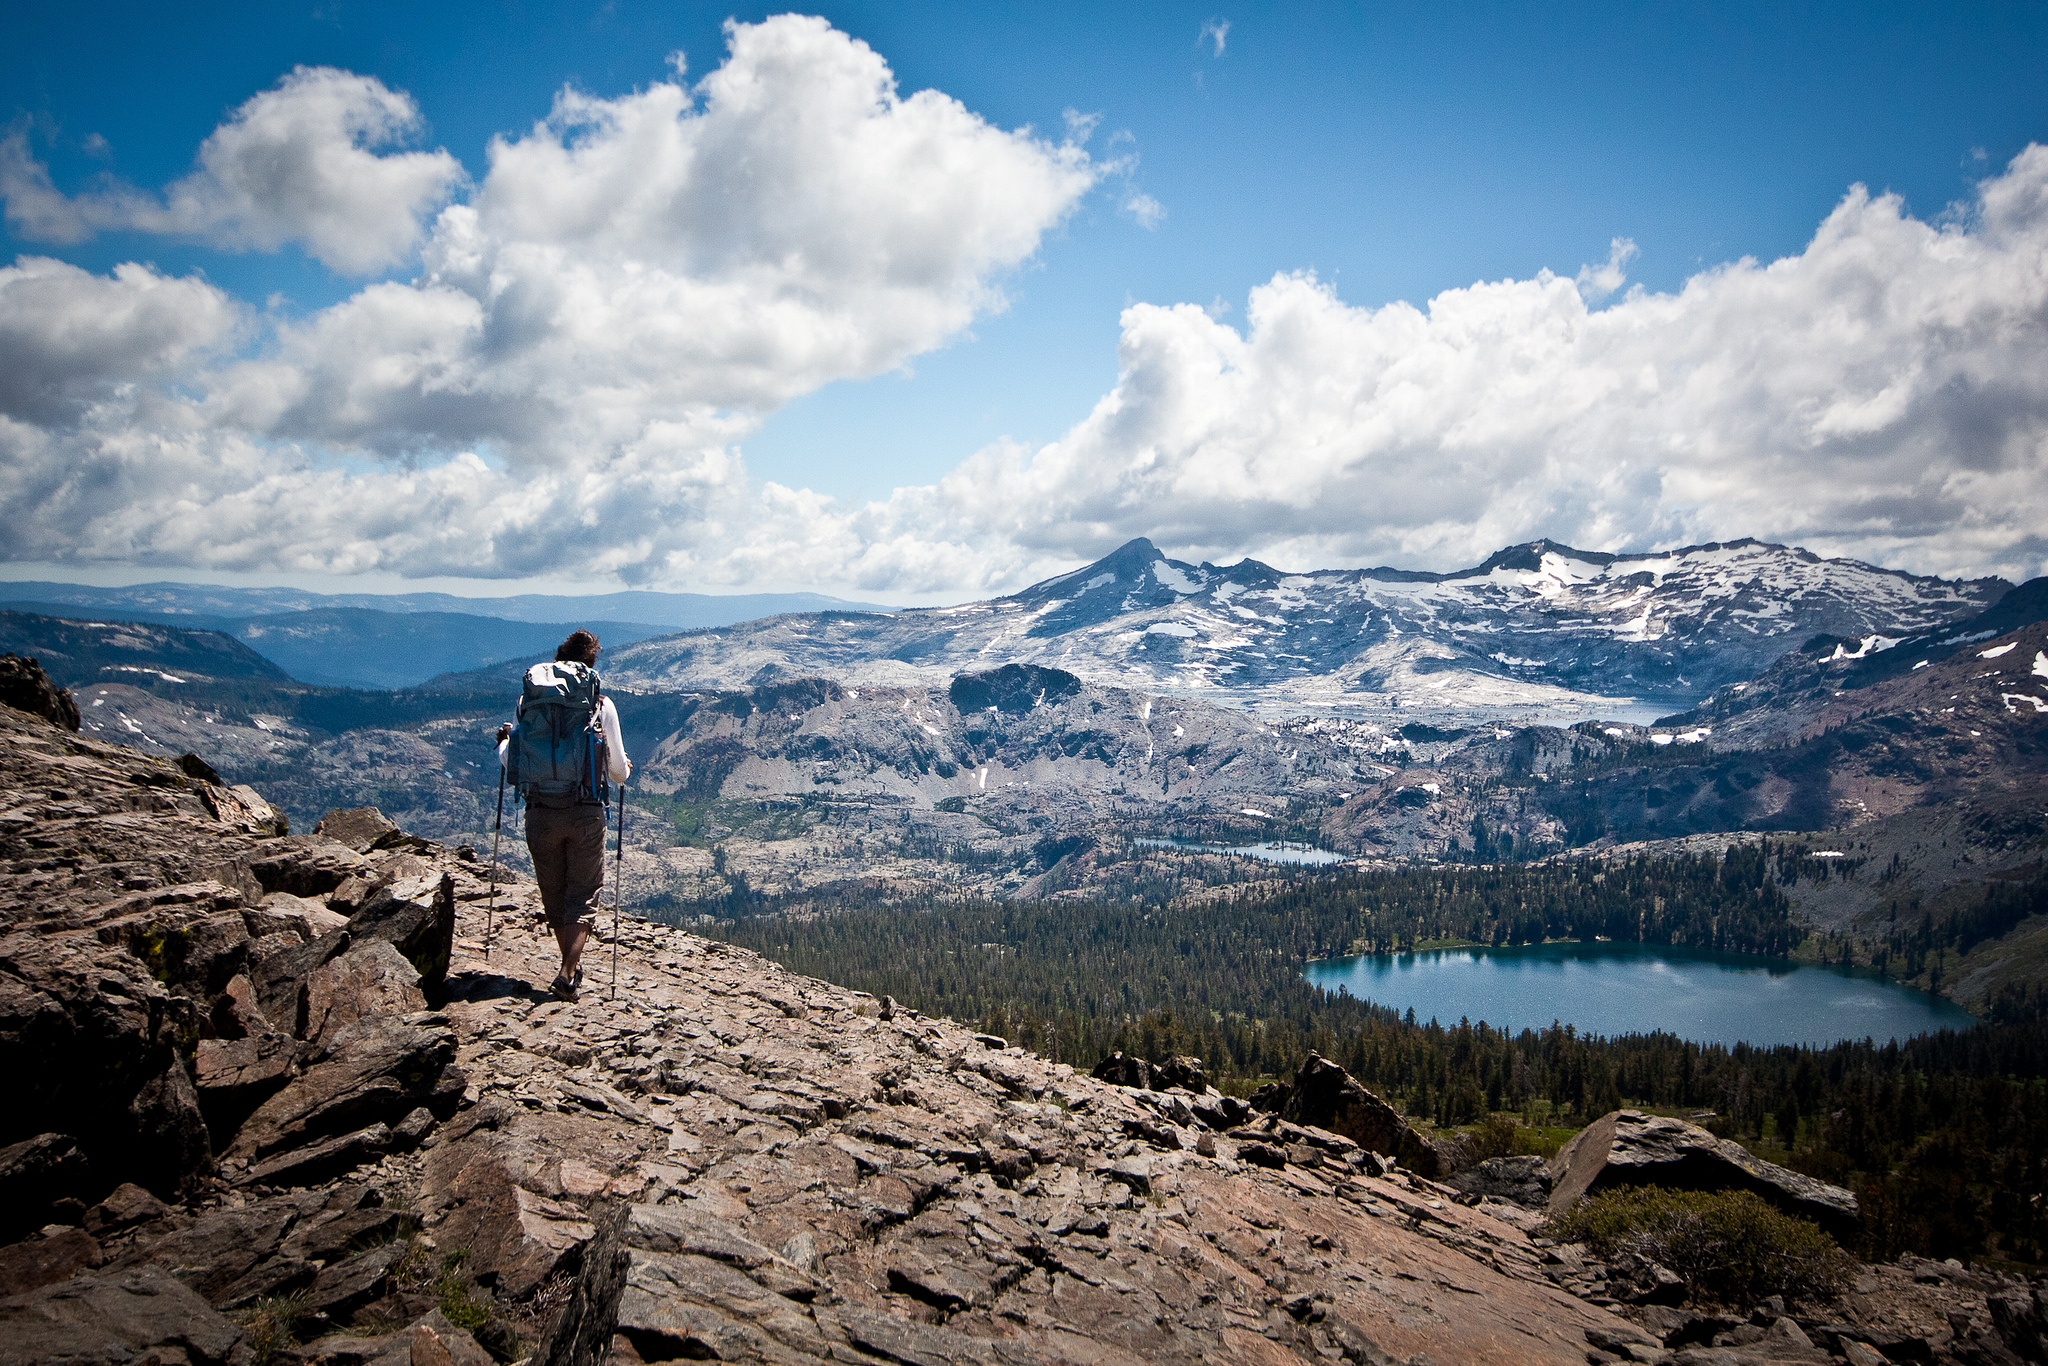 A hiker looks over a high mountain vista